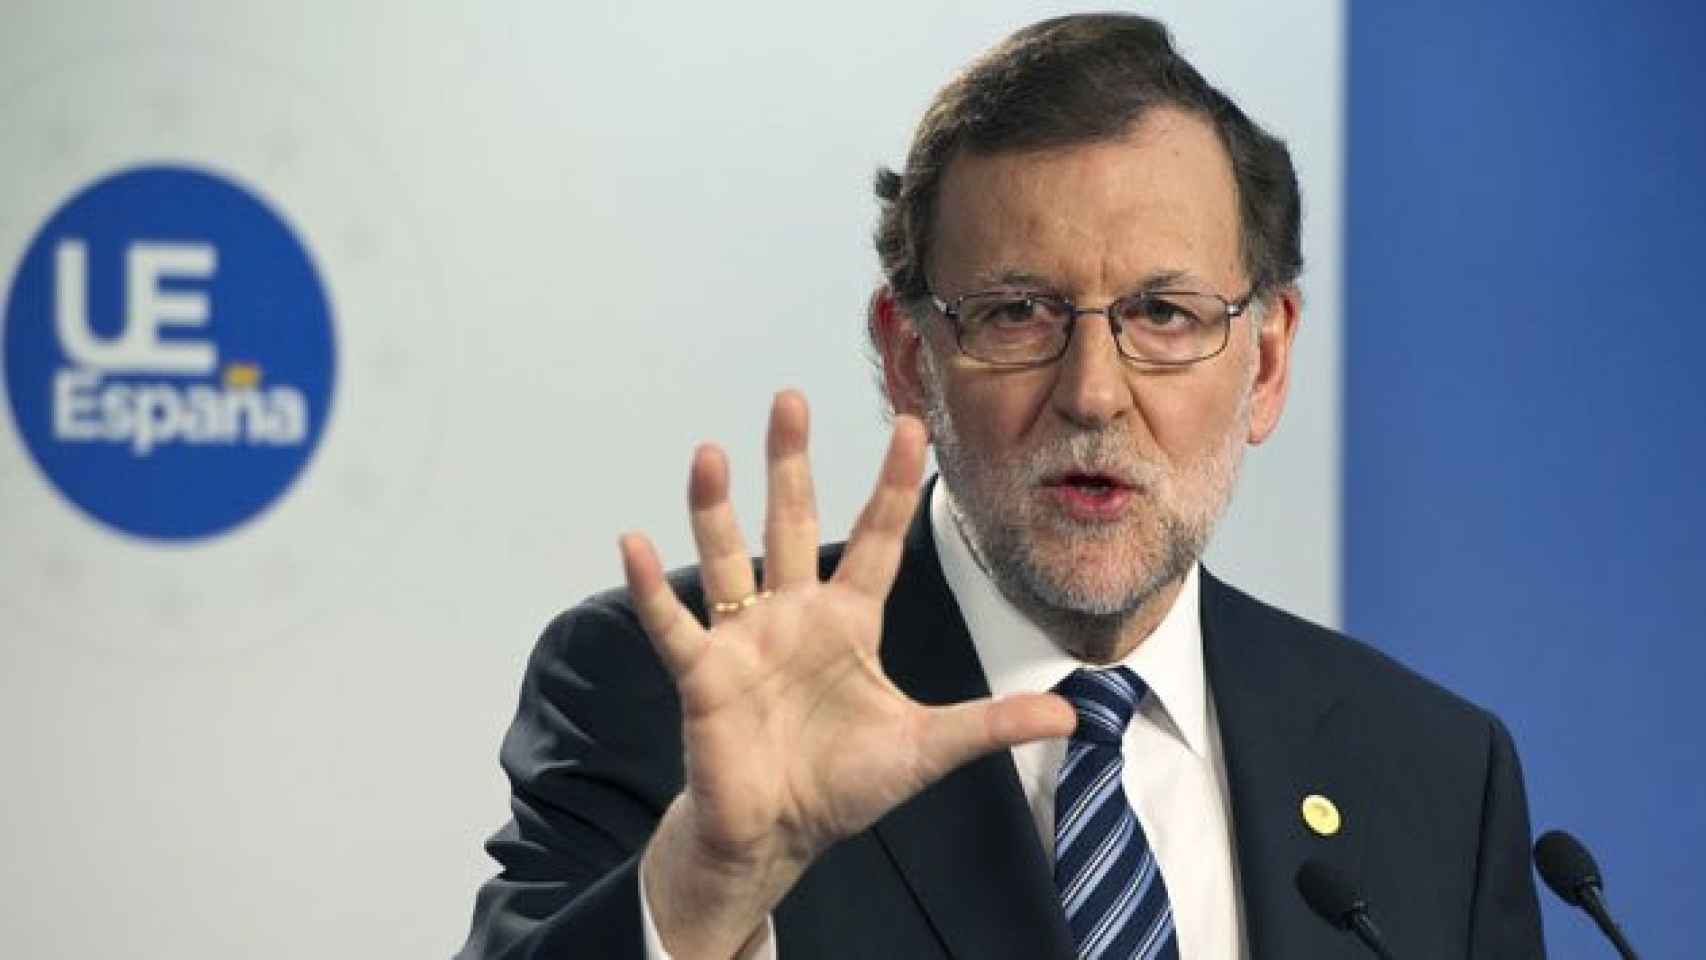 El presidente del Gobierno, Mariano Rajoy, en una comparencia en Bruselas esta semana / EFE